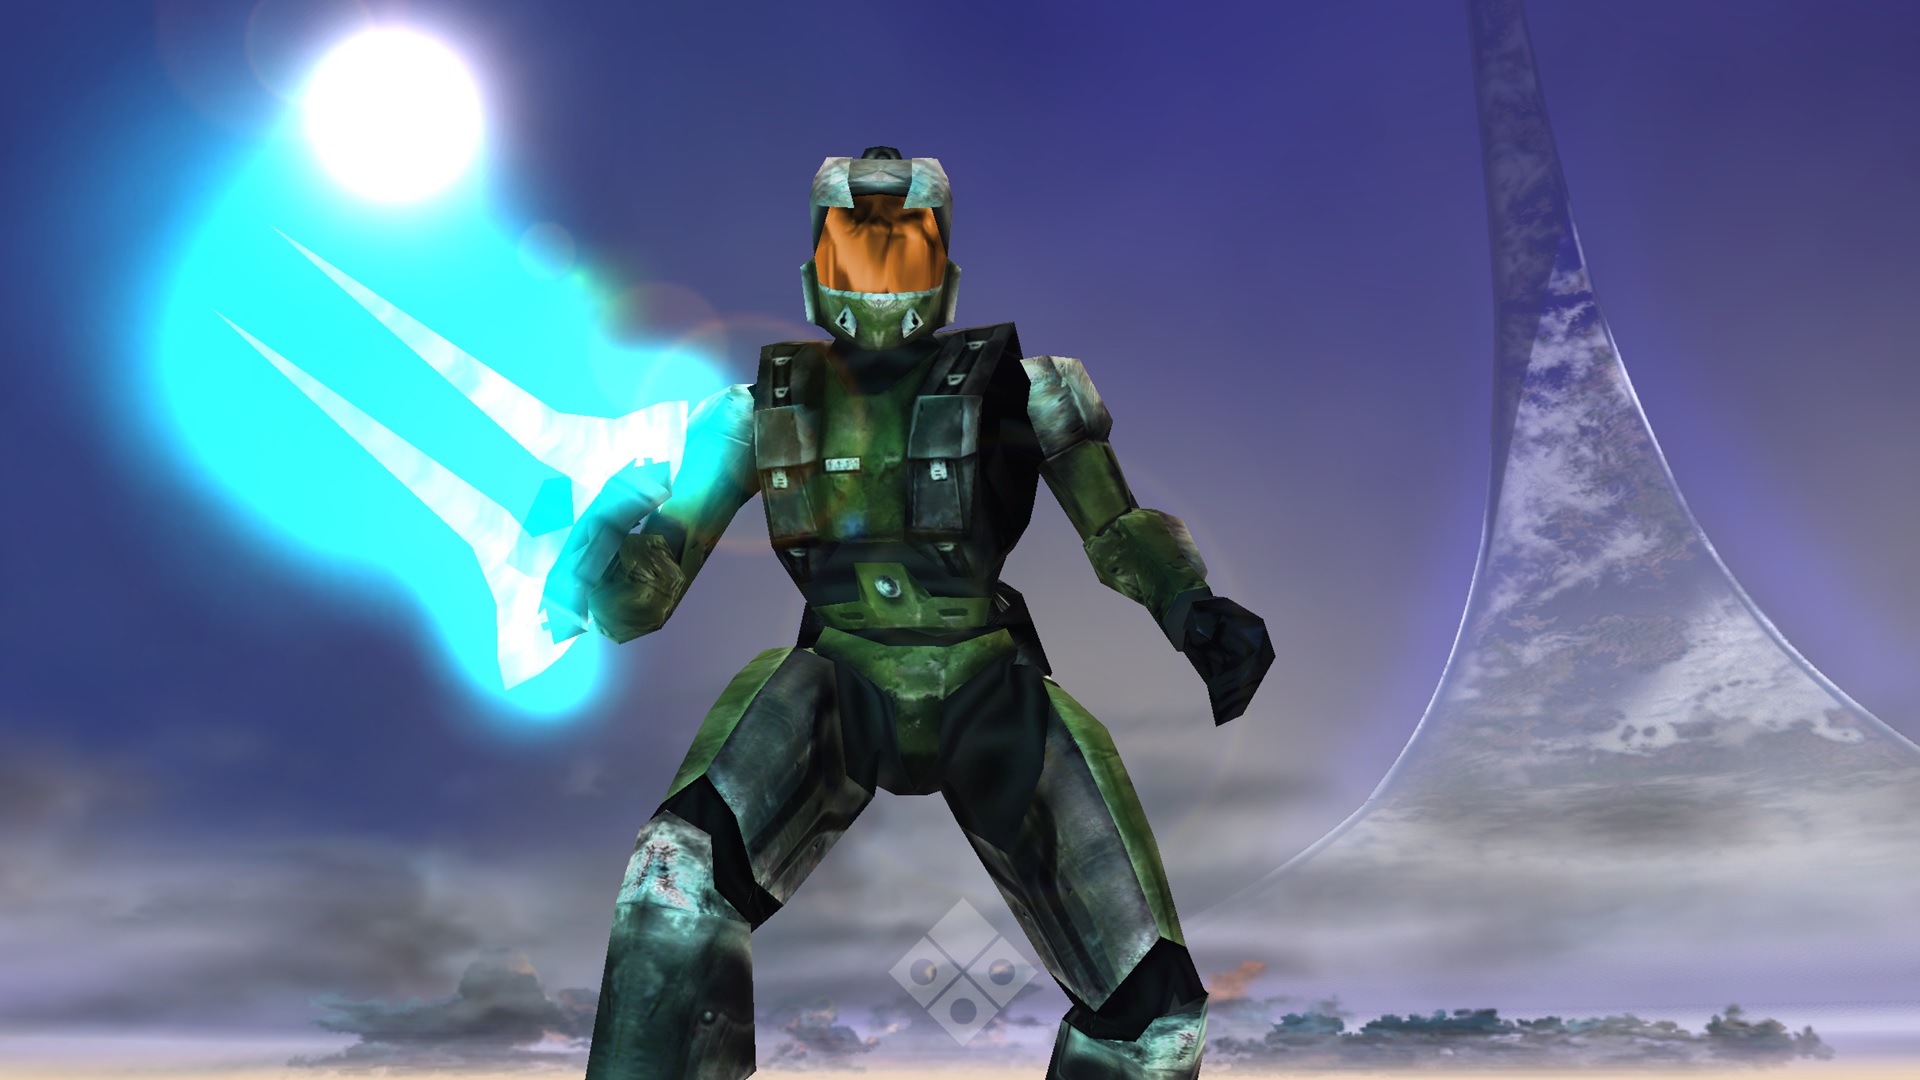 1999 Cyborg con una espada de energía en el anillo Halo